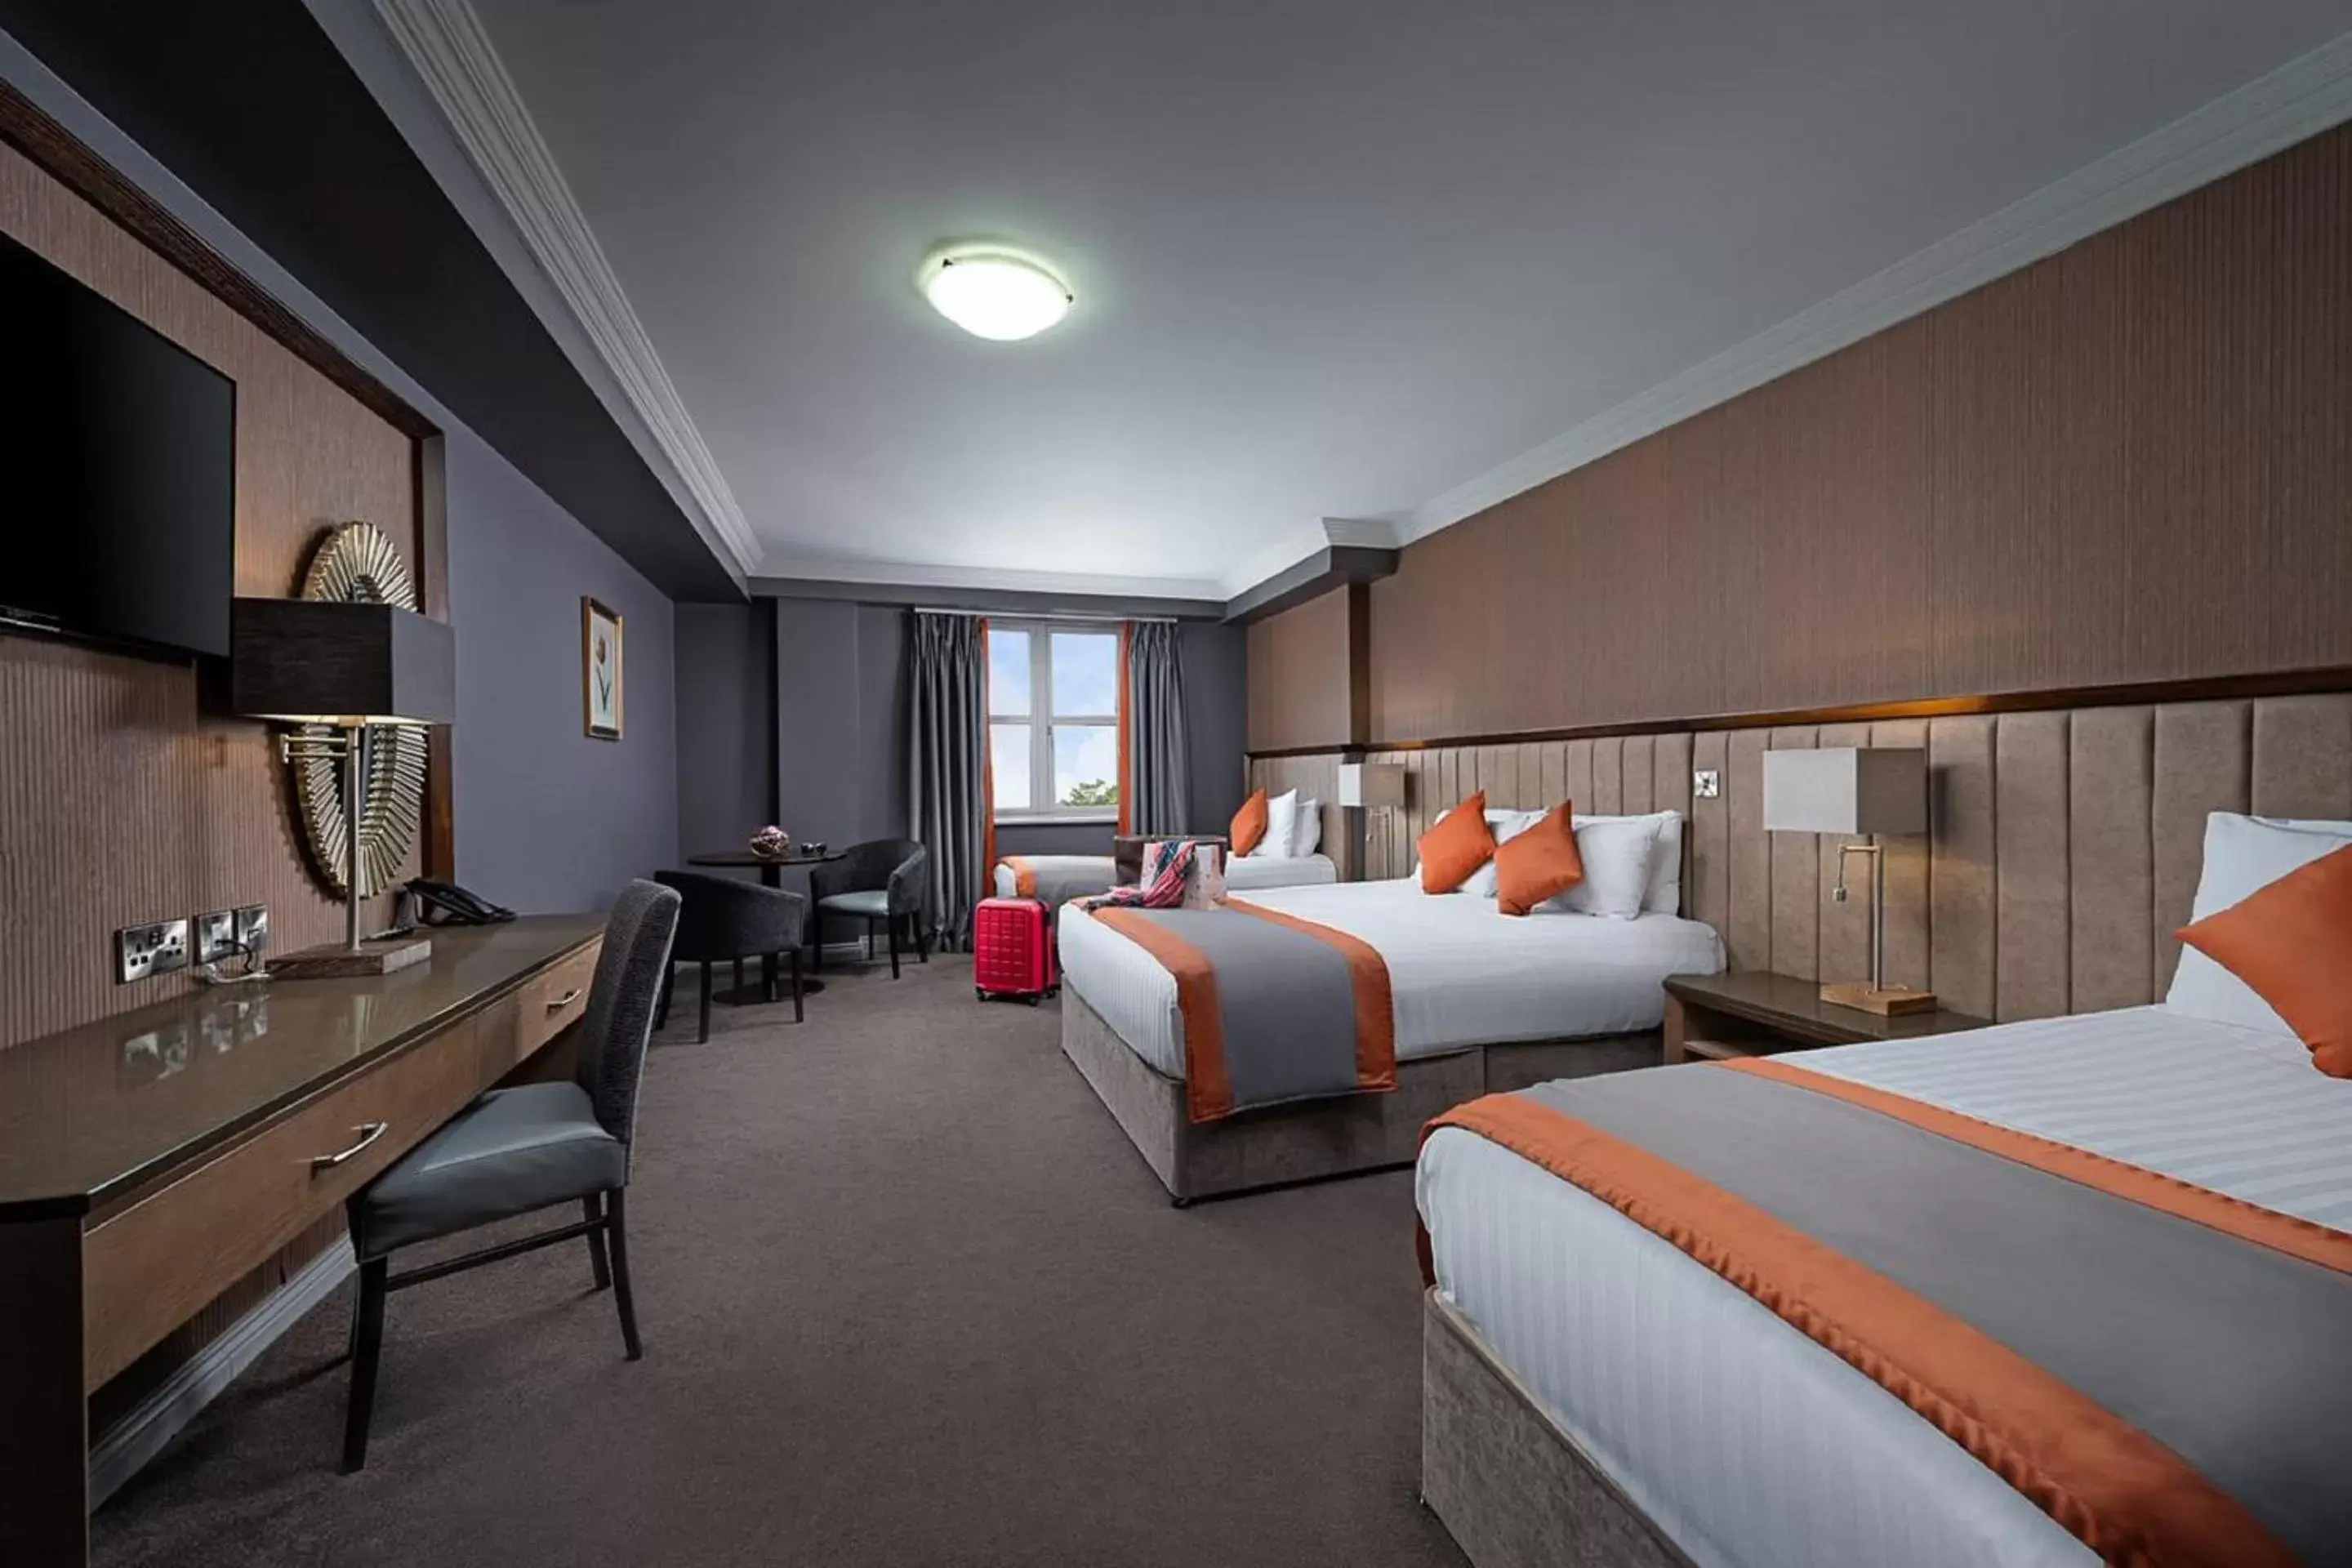 Bedroom in Midlands Park Hotel